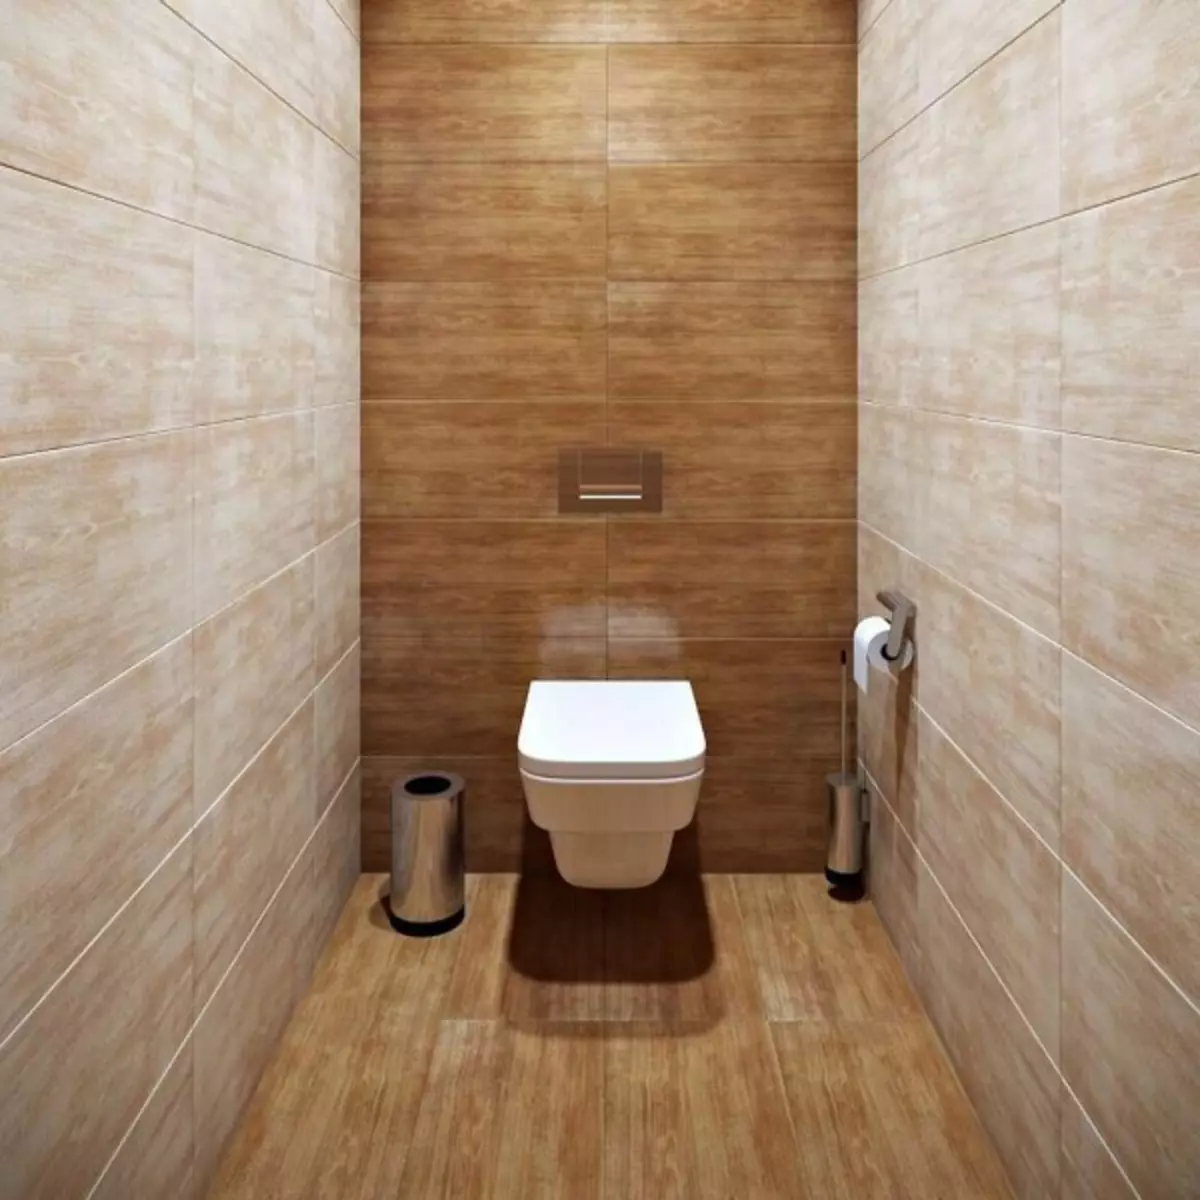 تصميم المرحاض: تطوير التصميم بنفسك